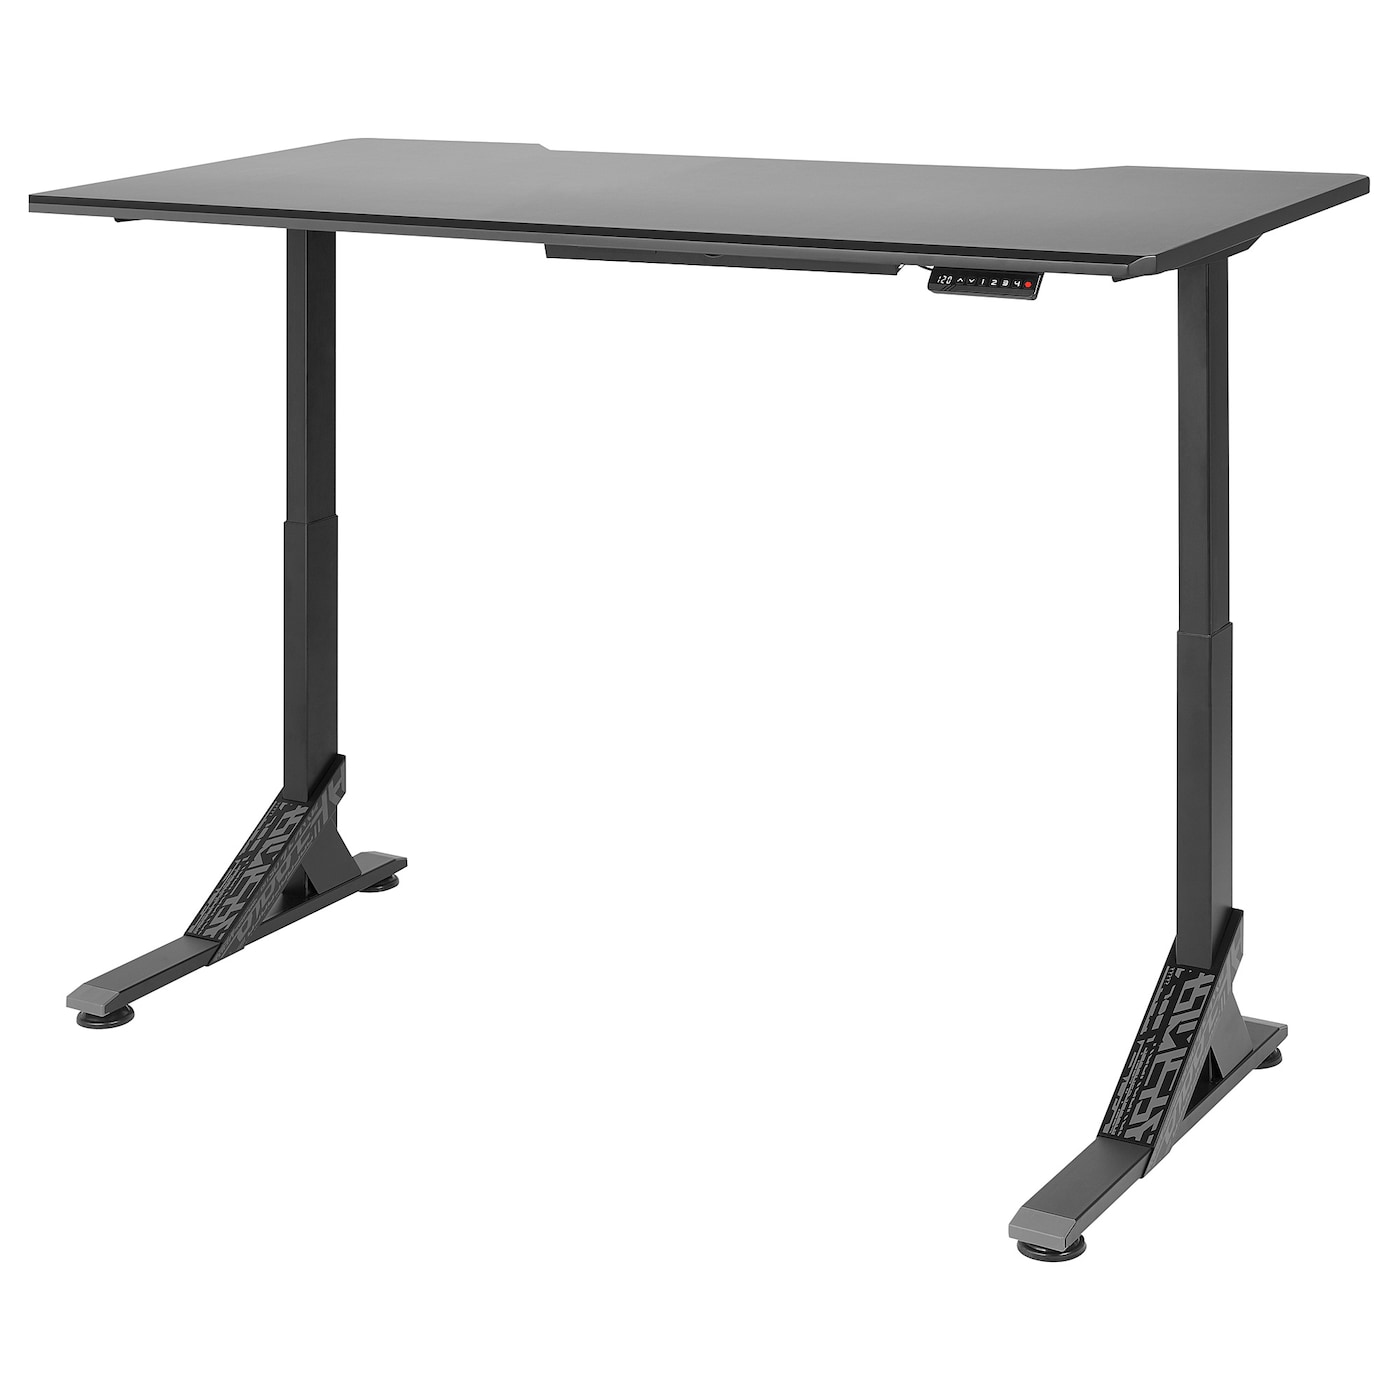 Регулируемый по высоте игровой стол - IKEA UPPSPEL, черный, 180х80х123 см, УППСПЕЛ ИКЕА